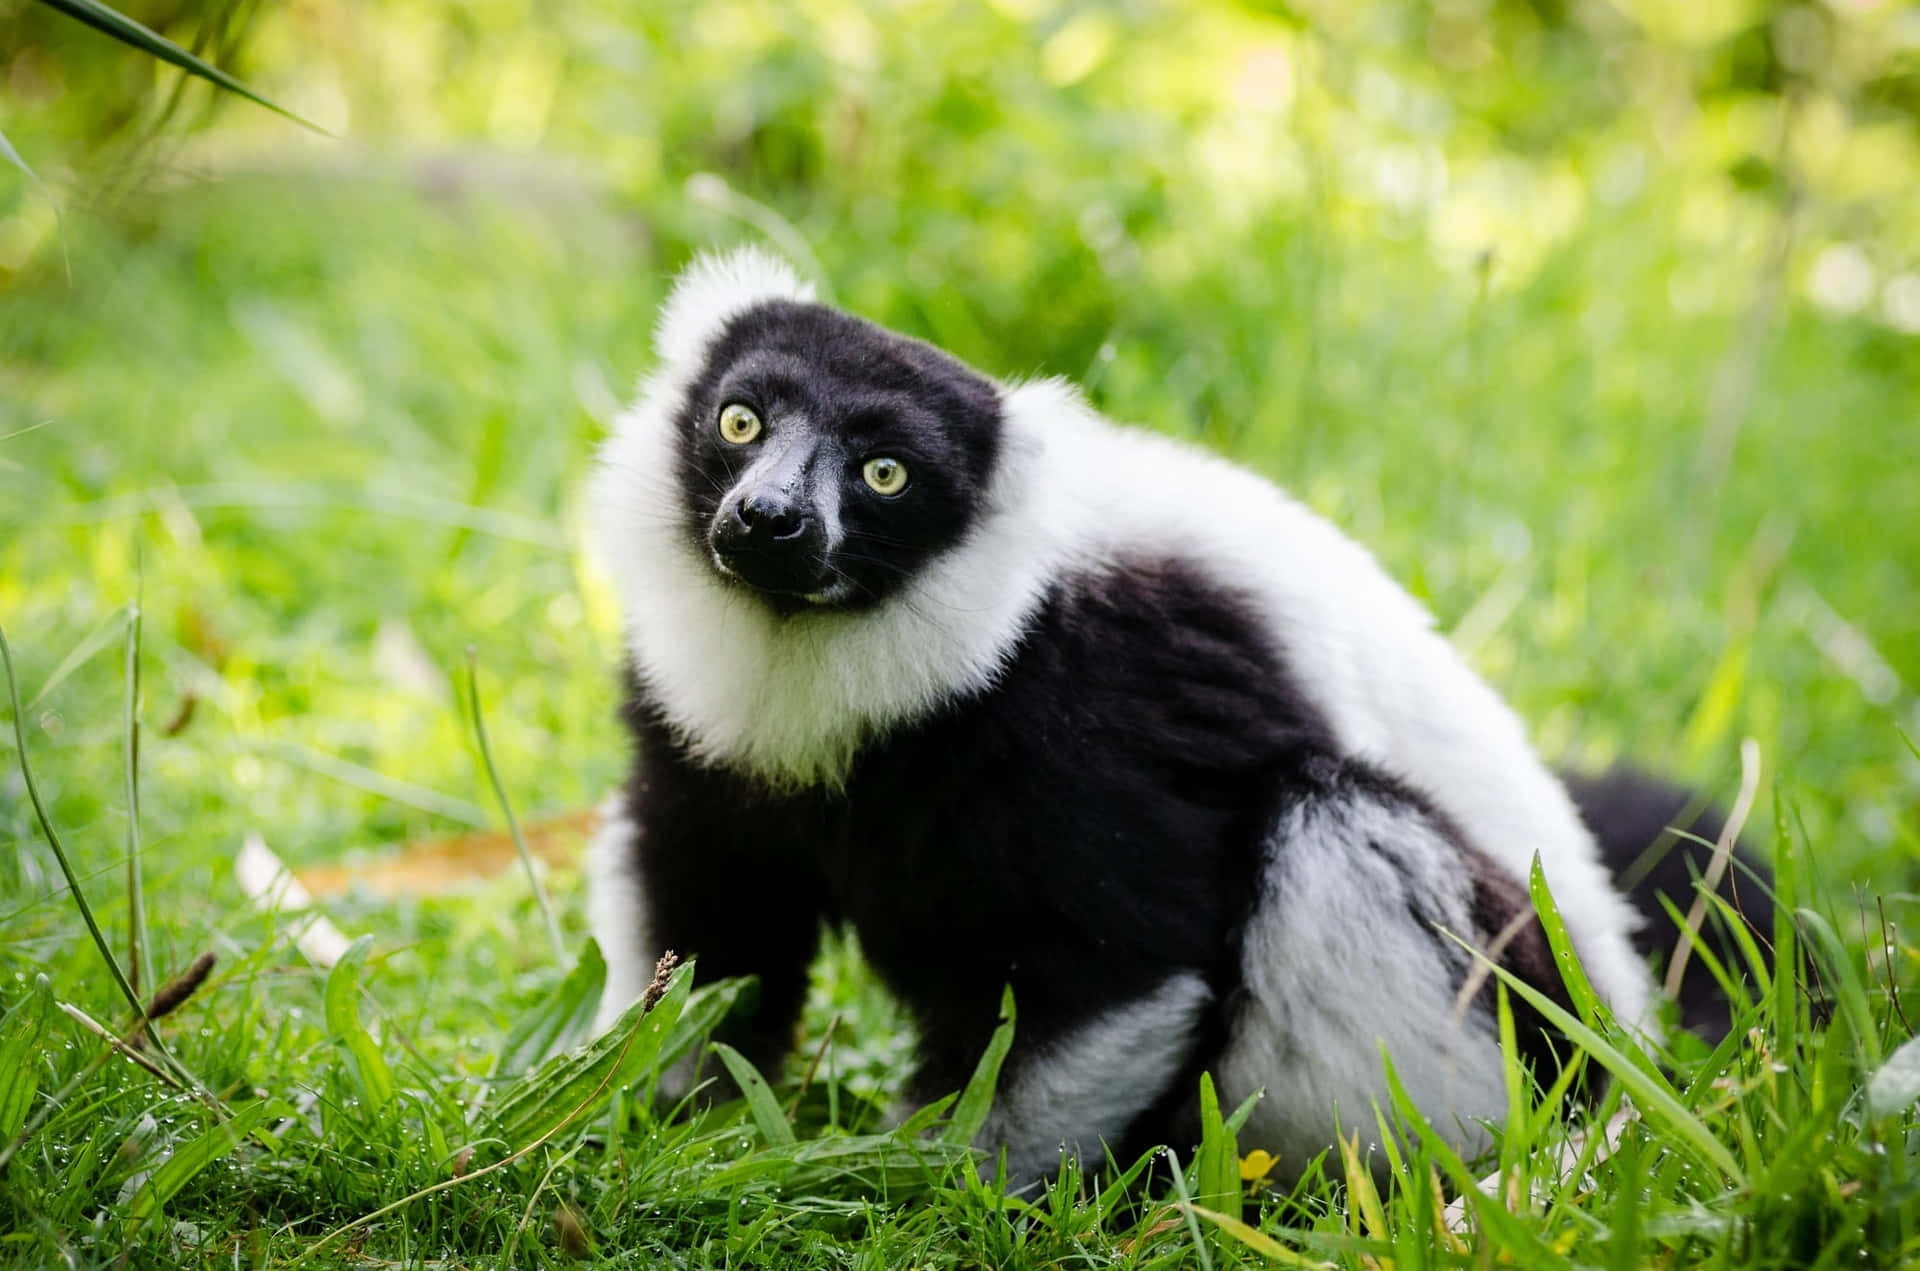 Blackand White Ruffed Lemurin Nature.jpg Wallpaper